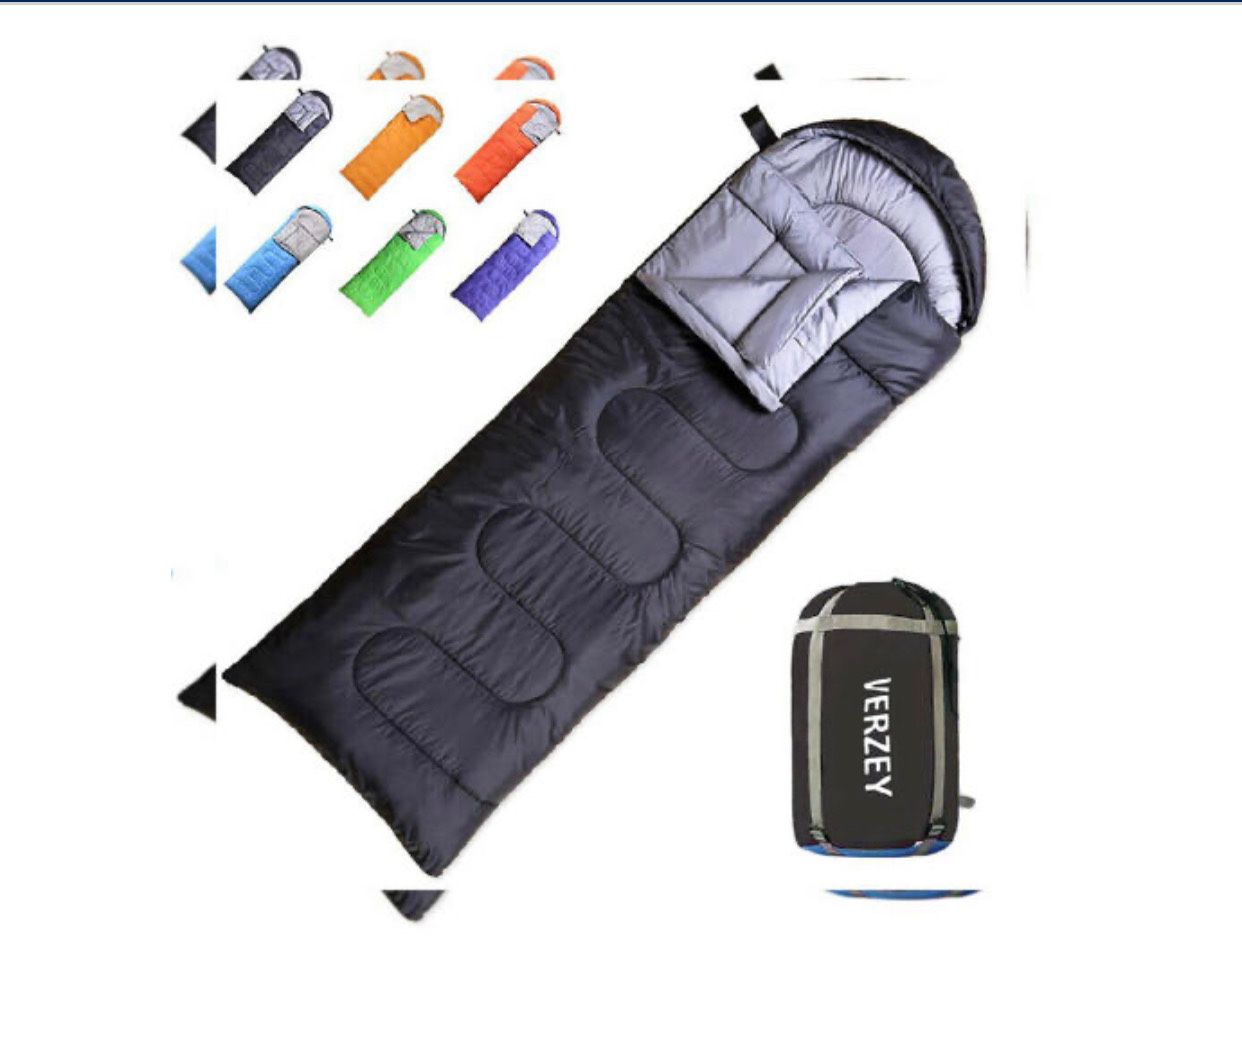 New waterproof sleeping bag